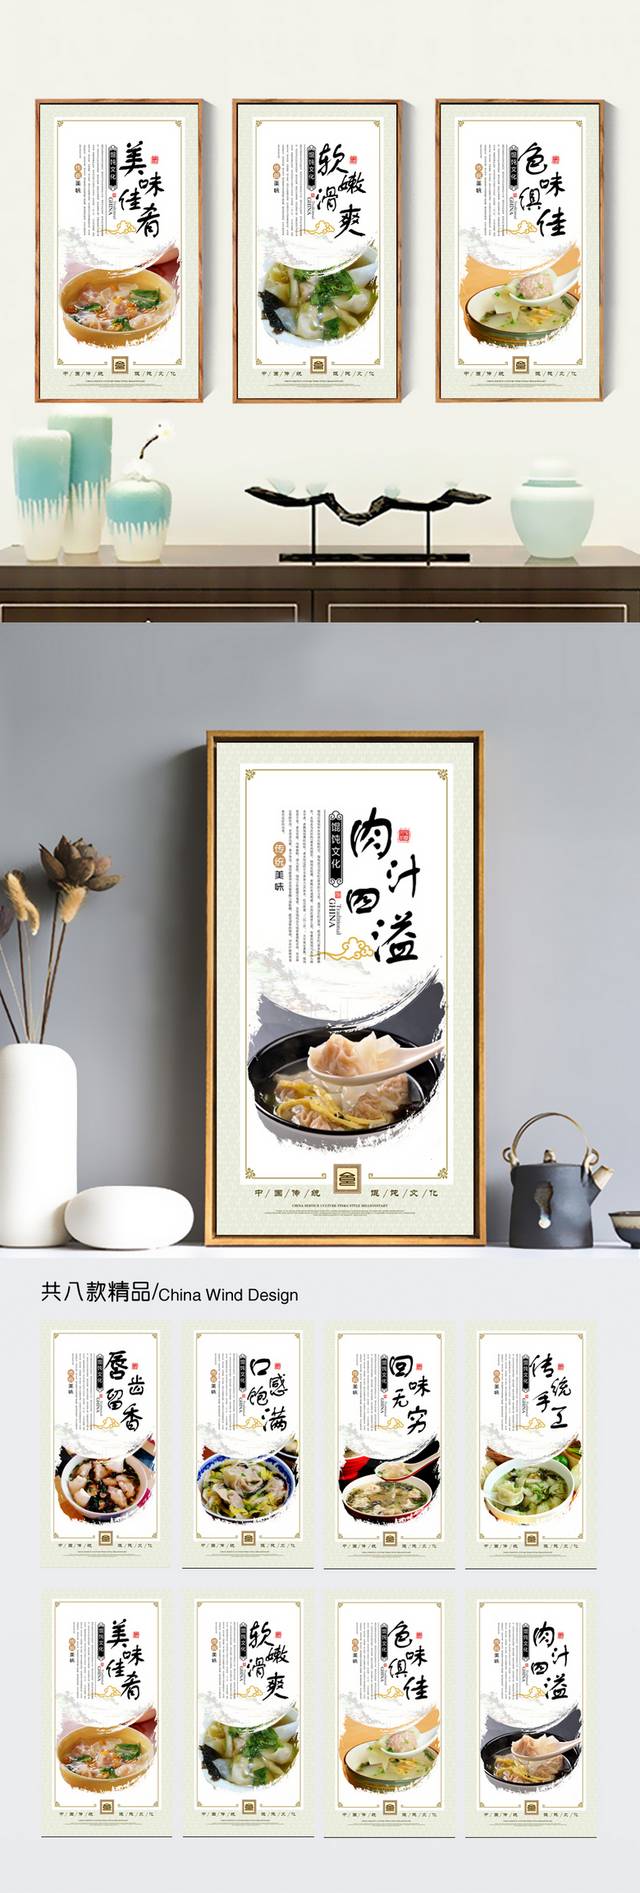 千里香馄饨展板挂画设计图片